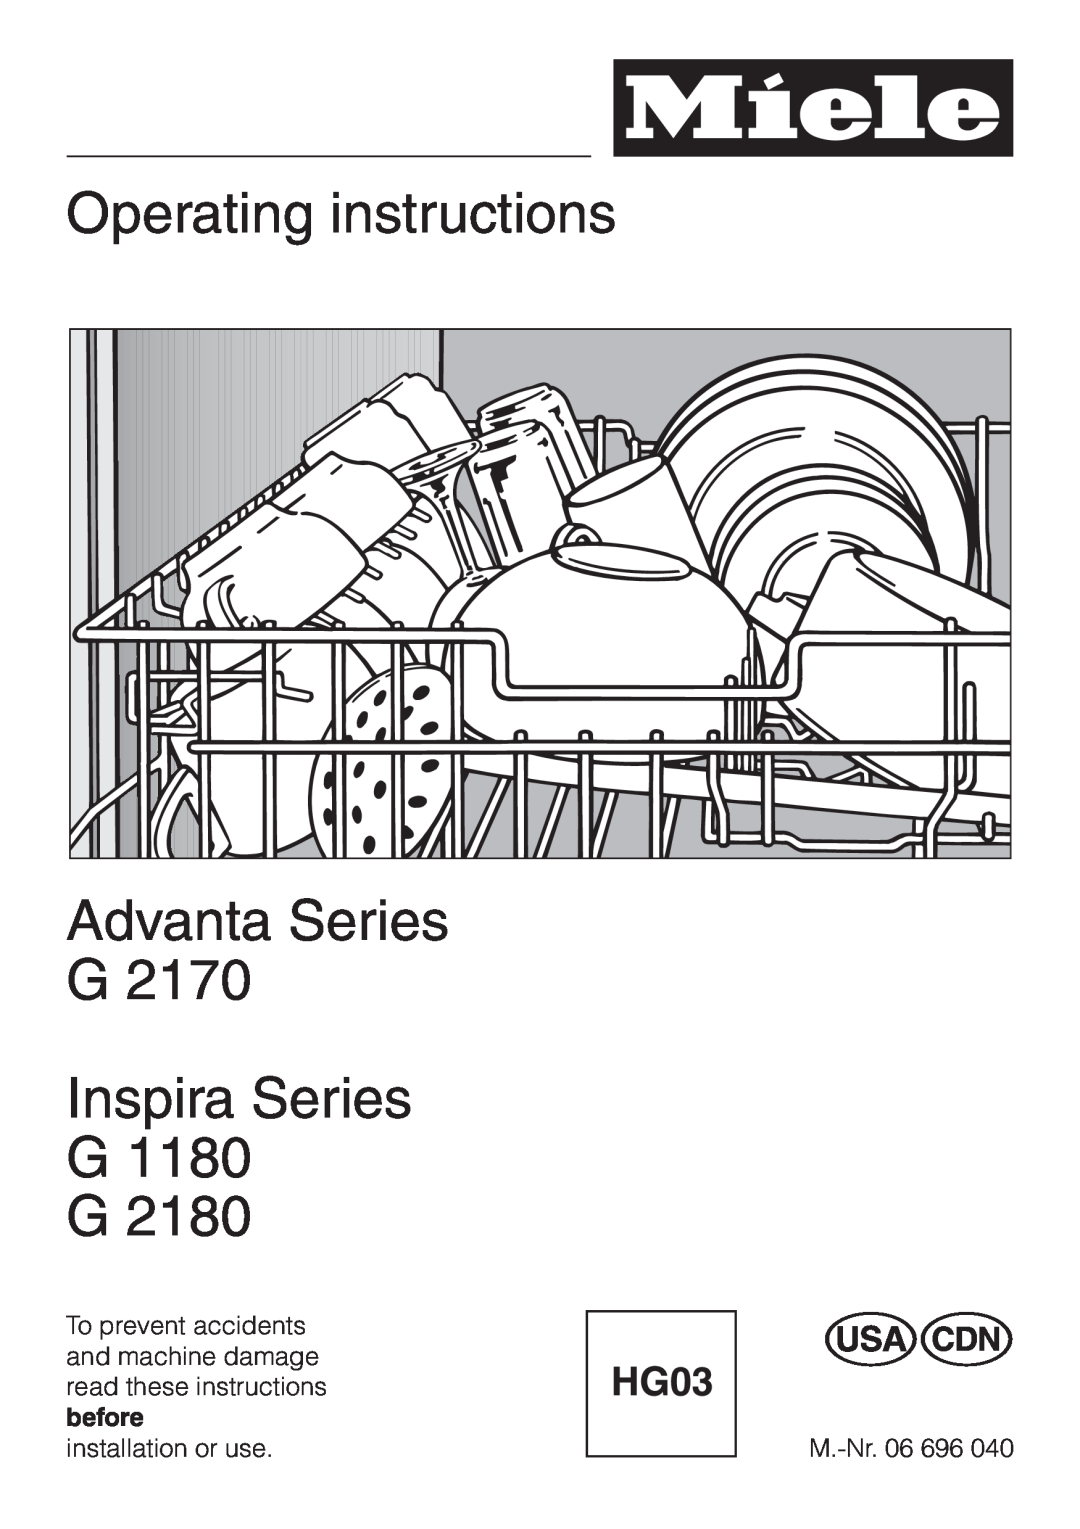 Miele G 1180 manual Operating instructions Advanta Series G, Inspira Series G1180 G2180 